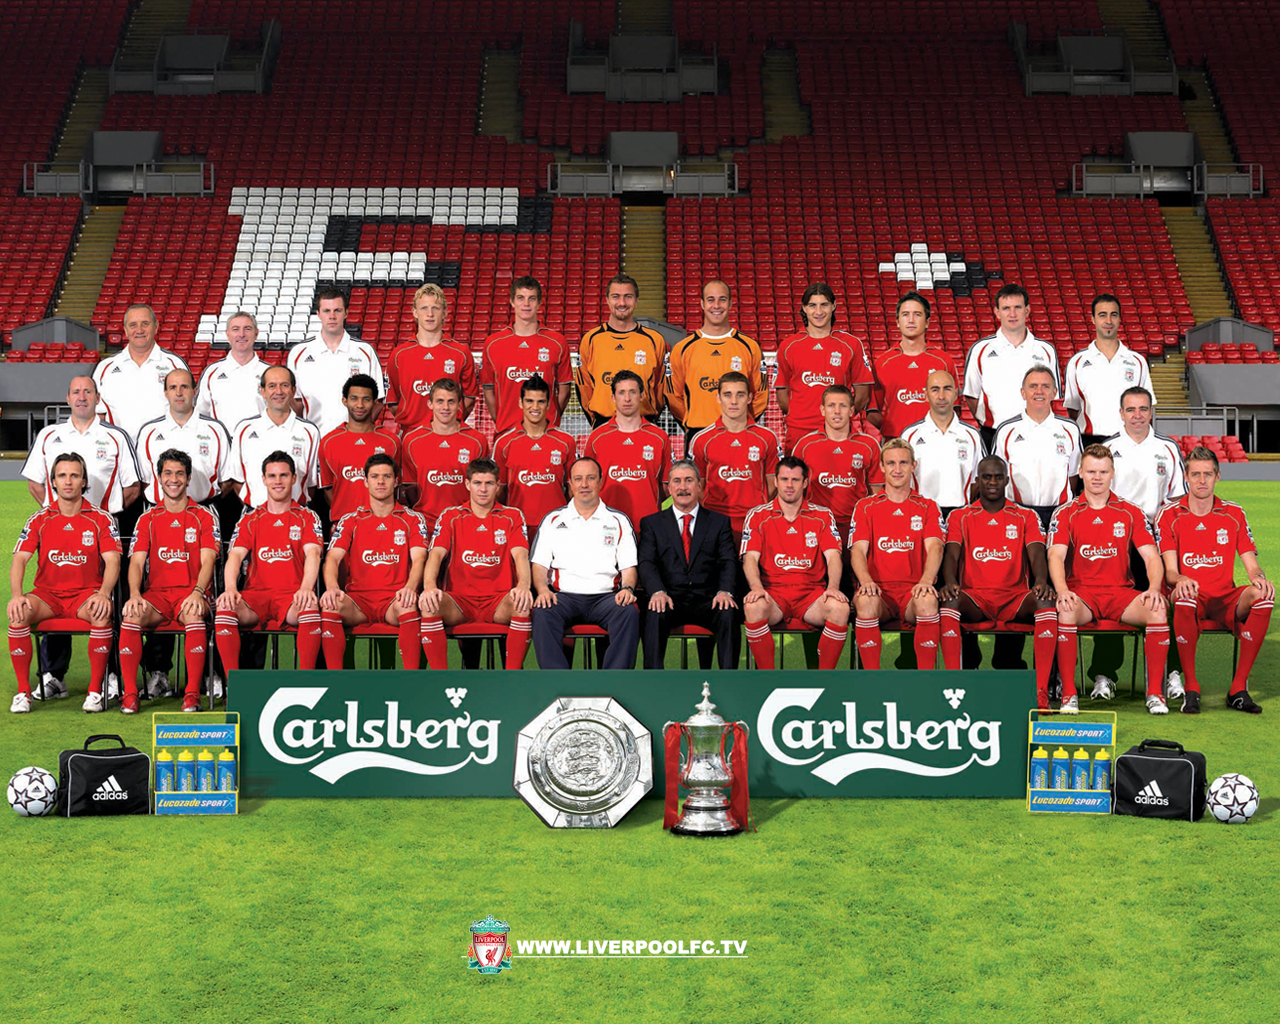 http://1.bp.blogspot.com/-D0lVURfSodw/TlFcVgEfe8I/AAAAAAAAIHI/U-qtEsNXQt0/s1600/Liverpool-Football-Club-Team-HD-Wallpaper.jpg